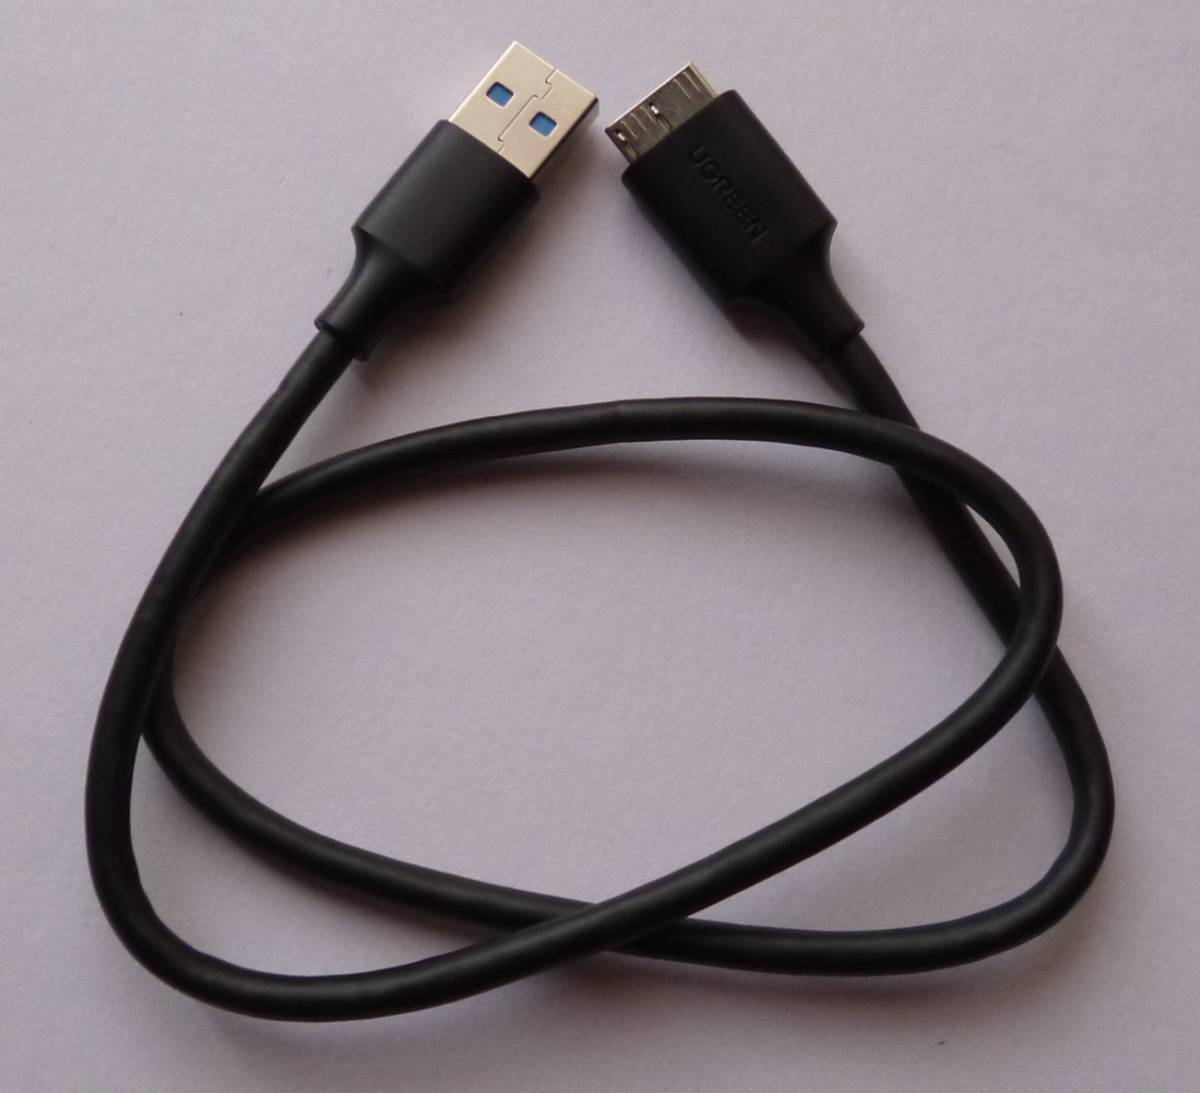 (8E7E)USB3.0ポータブルHDD500GB 稼働4108時間　新品UGREEN製ポータブルケース入